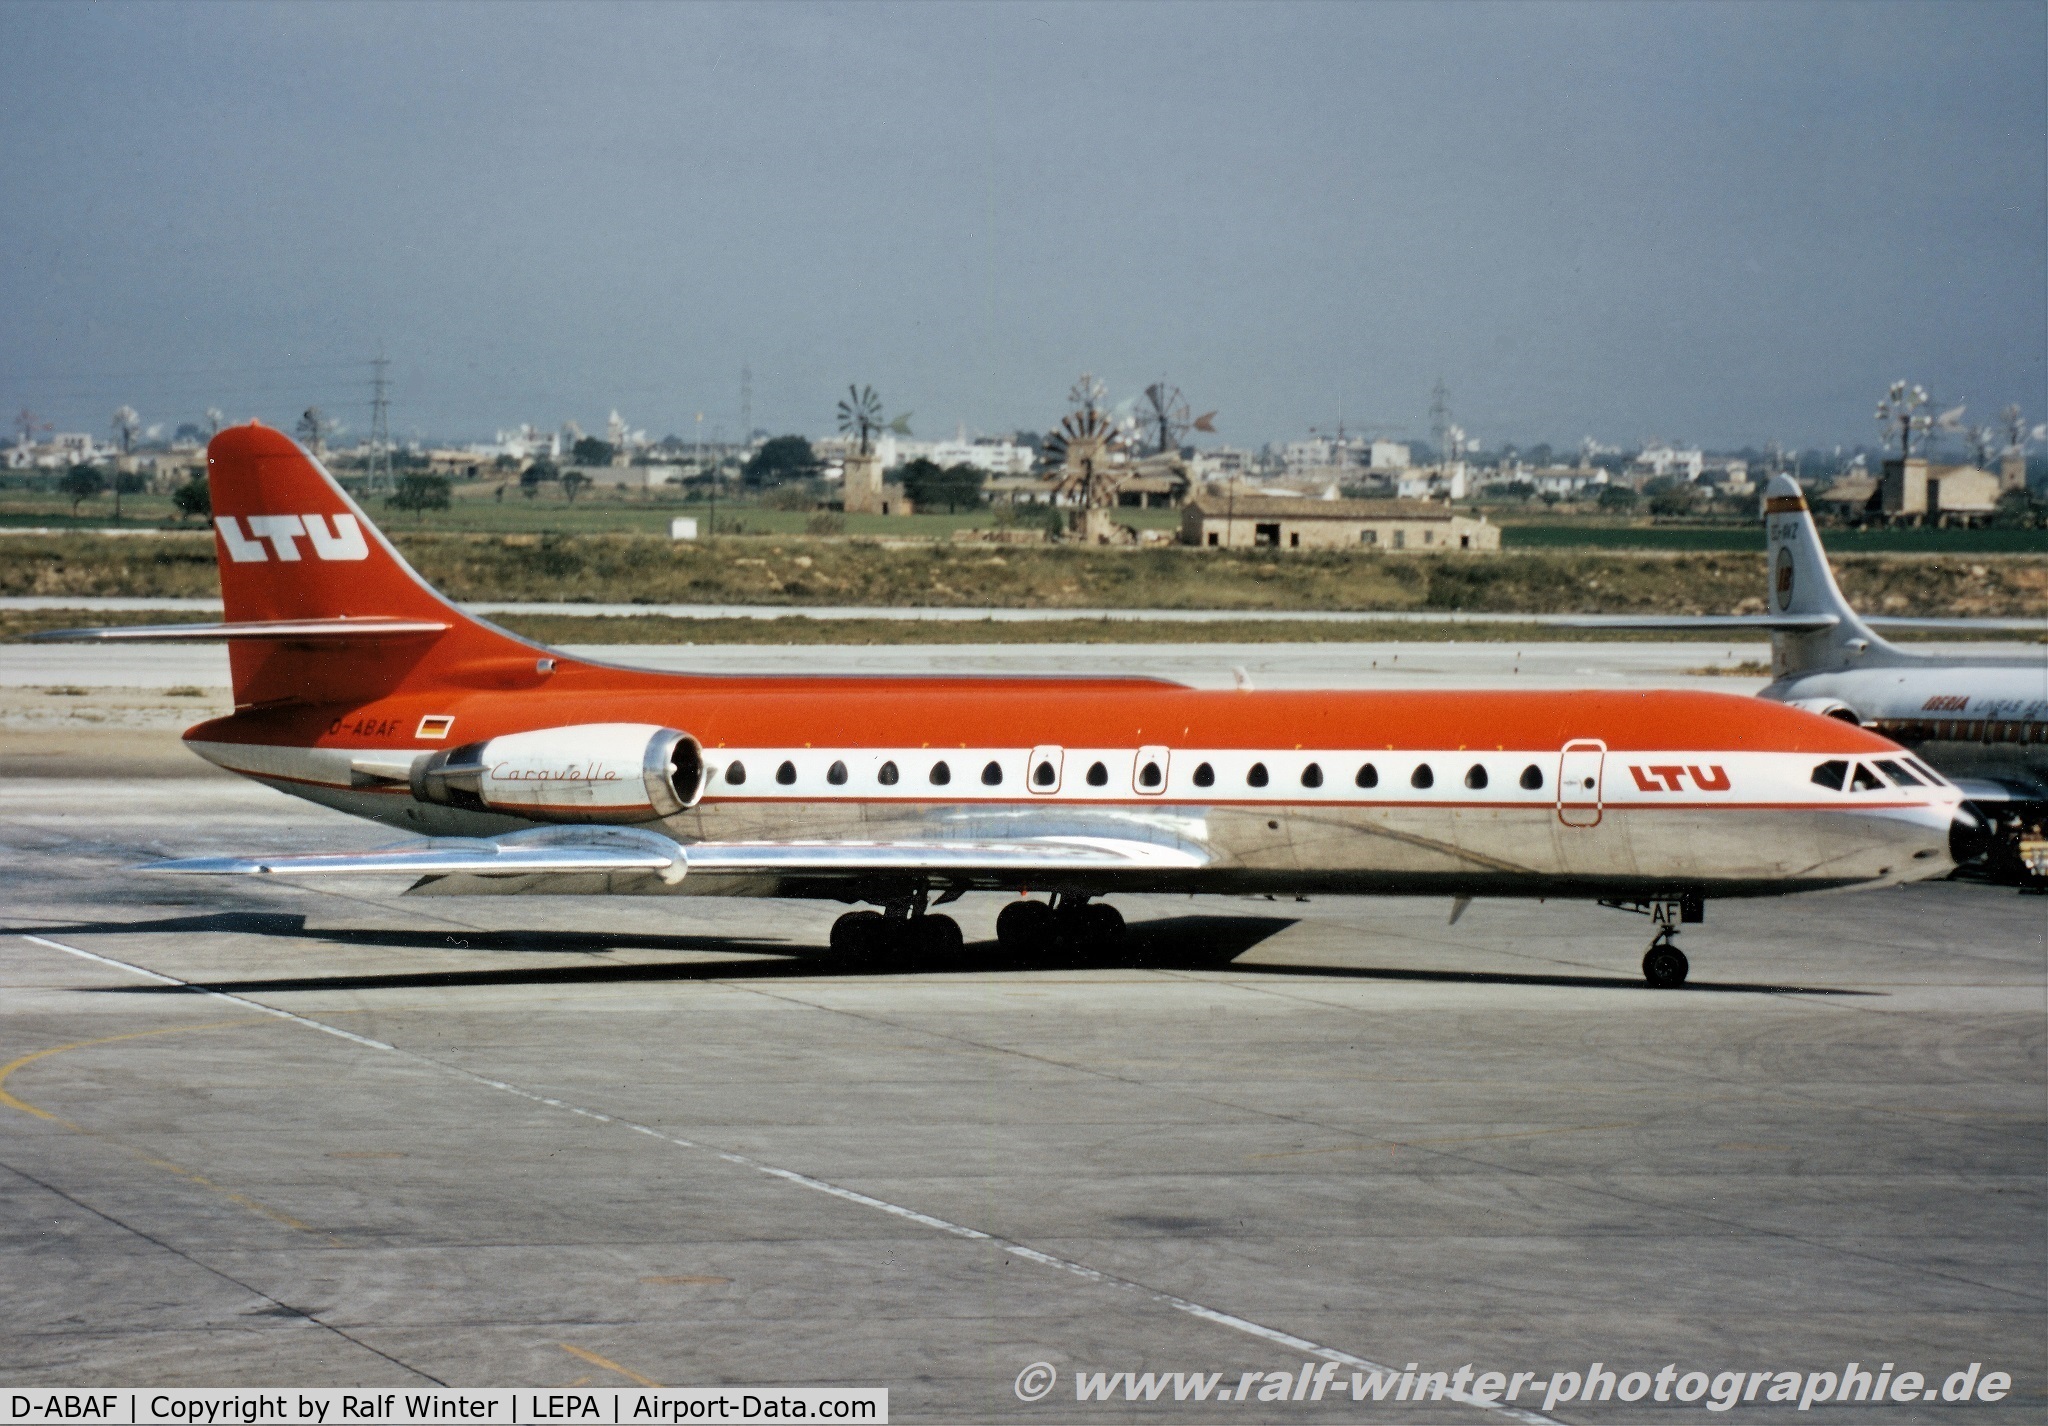 D-ABAF, 1969 Sud Aviation SE-210 Caravelle 10R C/N 263, Sud Aviation SE-210 Caravelle 10R - LTU - 263 - D-ABAF - 05.1972 - PMI